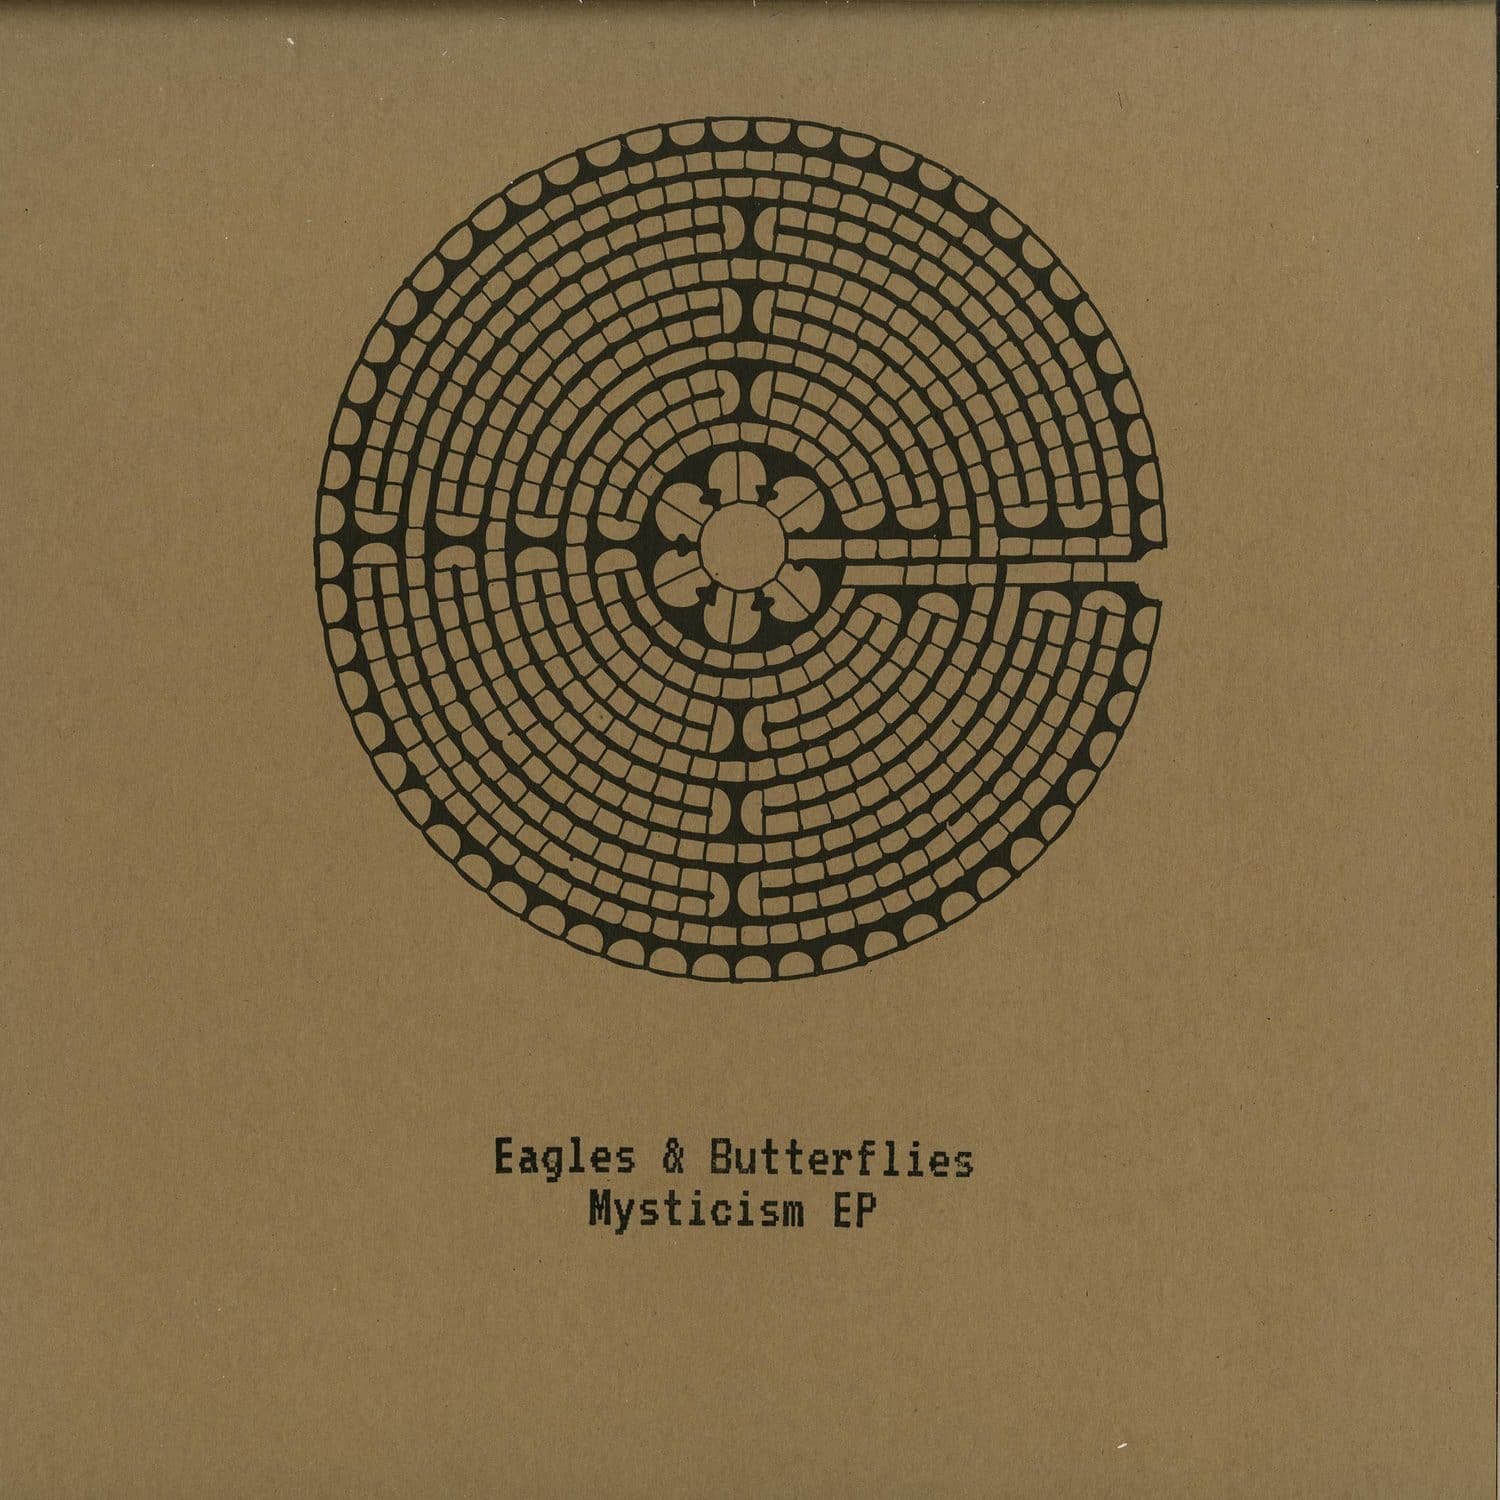 Eagles & Butterflies - MYSTICISM EP